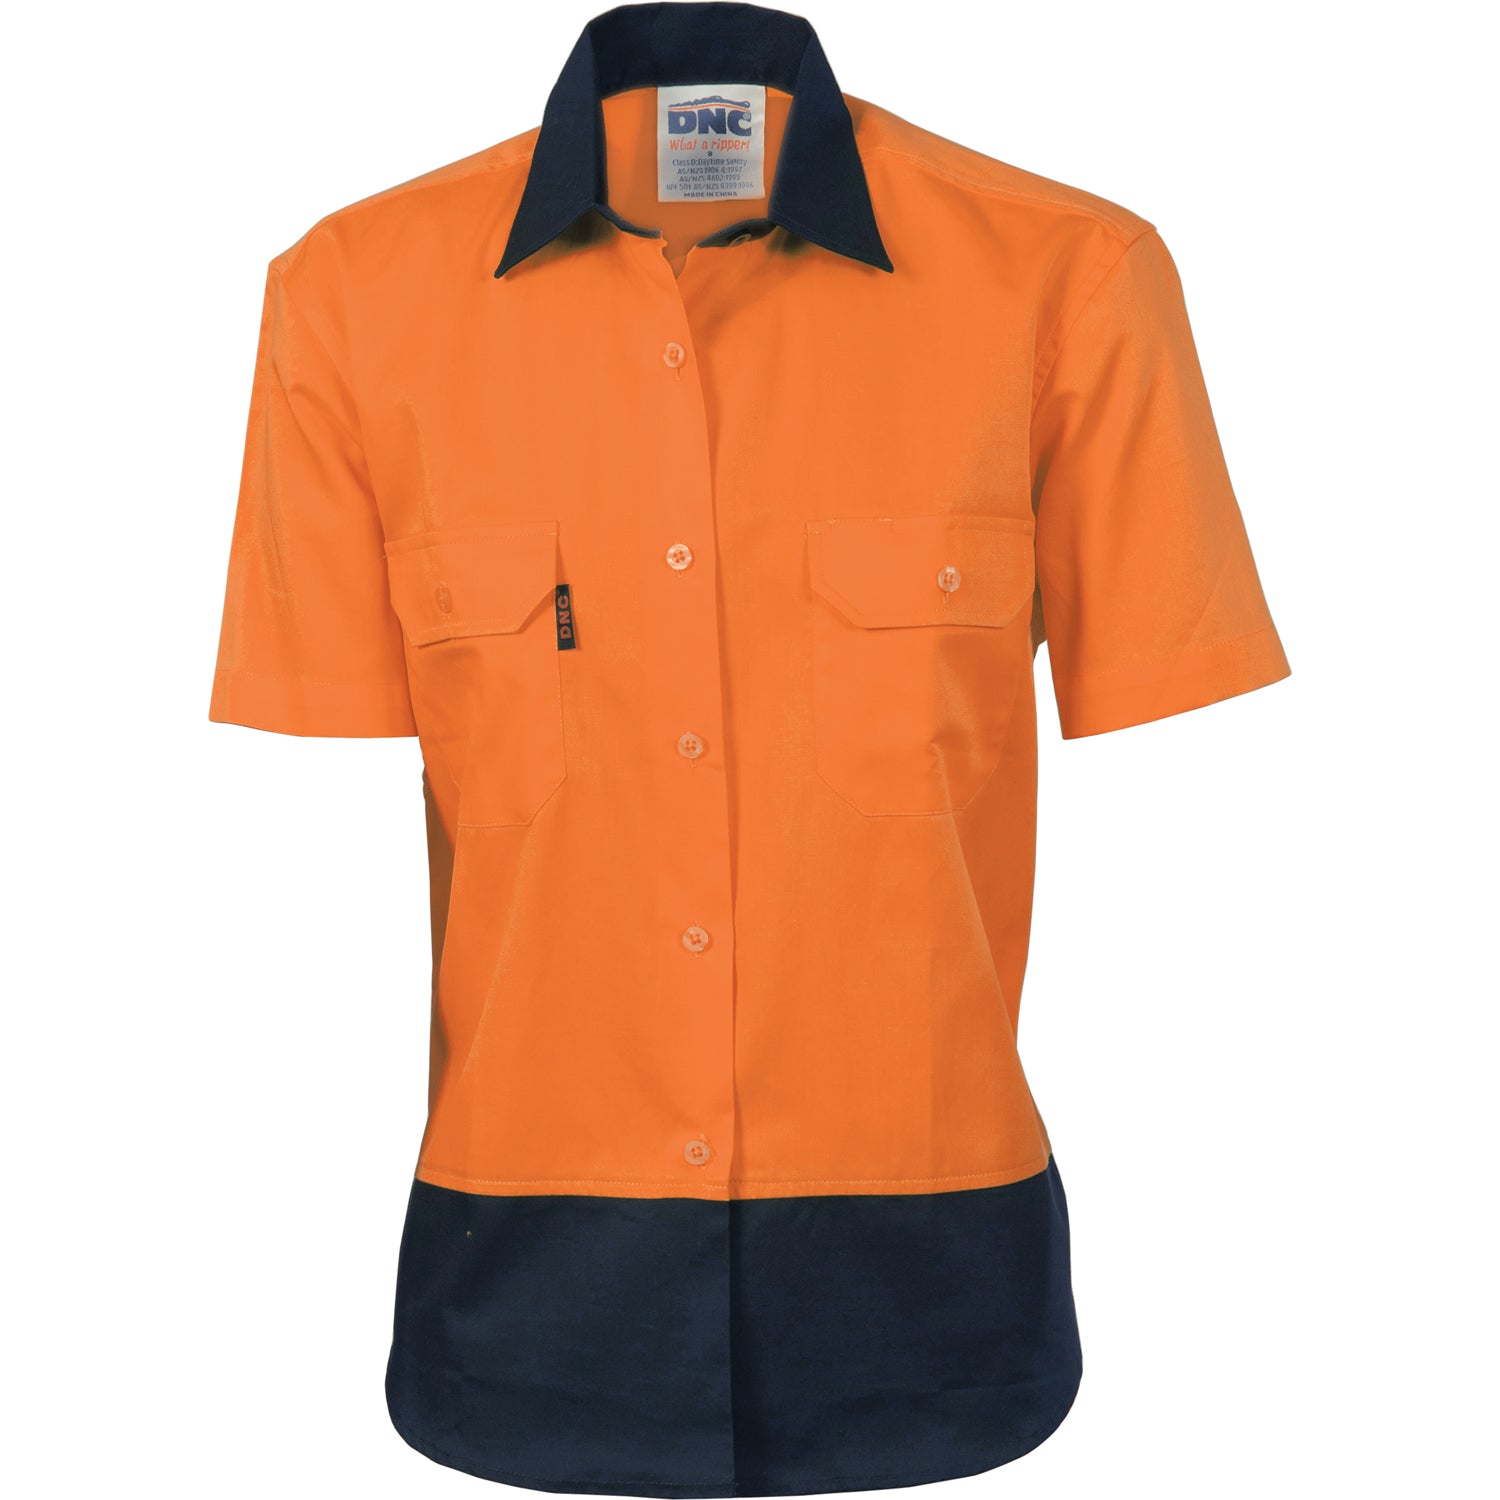 DNC Ladies HiVis 2 Tone Cool-Breeze Cotton Shirt - Short Sleeve - (3939)